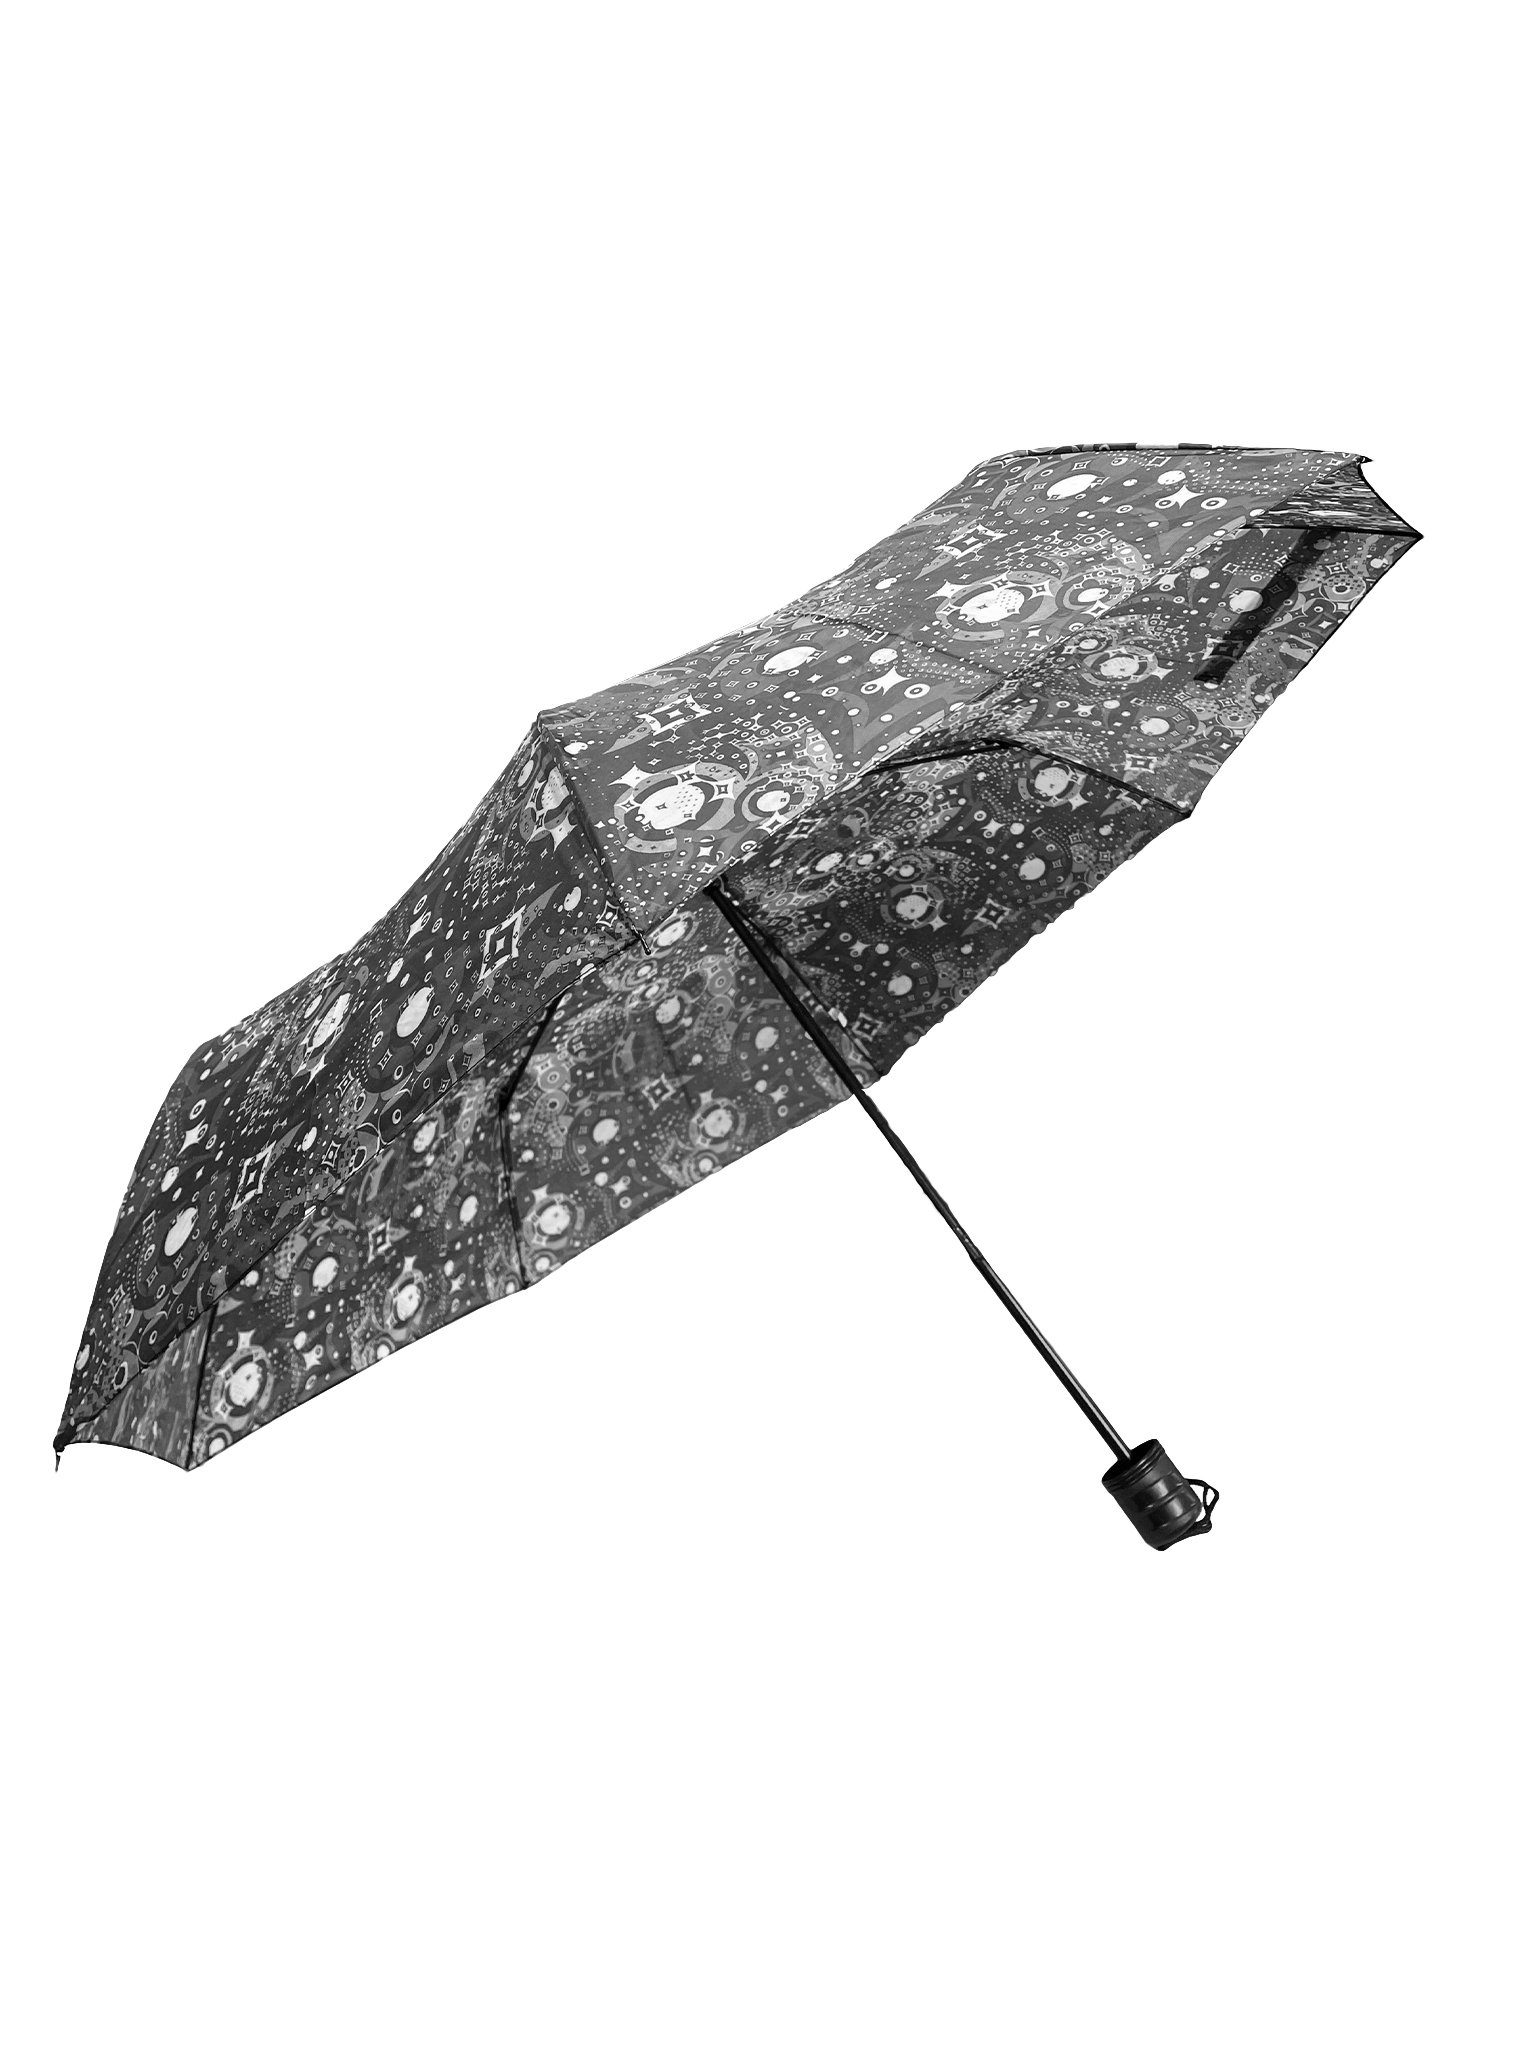 ANELY Taschenregenschirm Kleiner Regenschirm Paris Taschenschirm, Gemustert Grau 6746 in